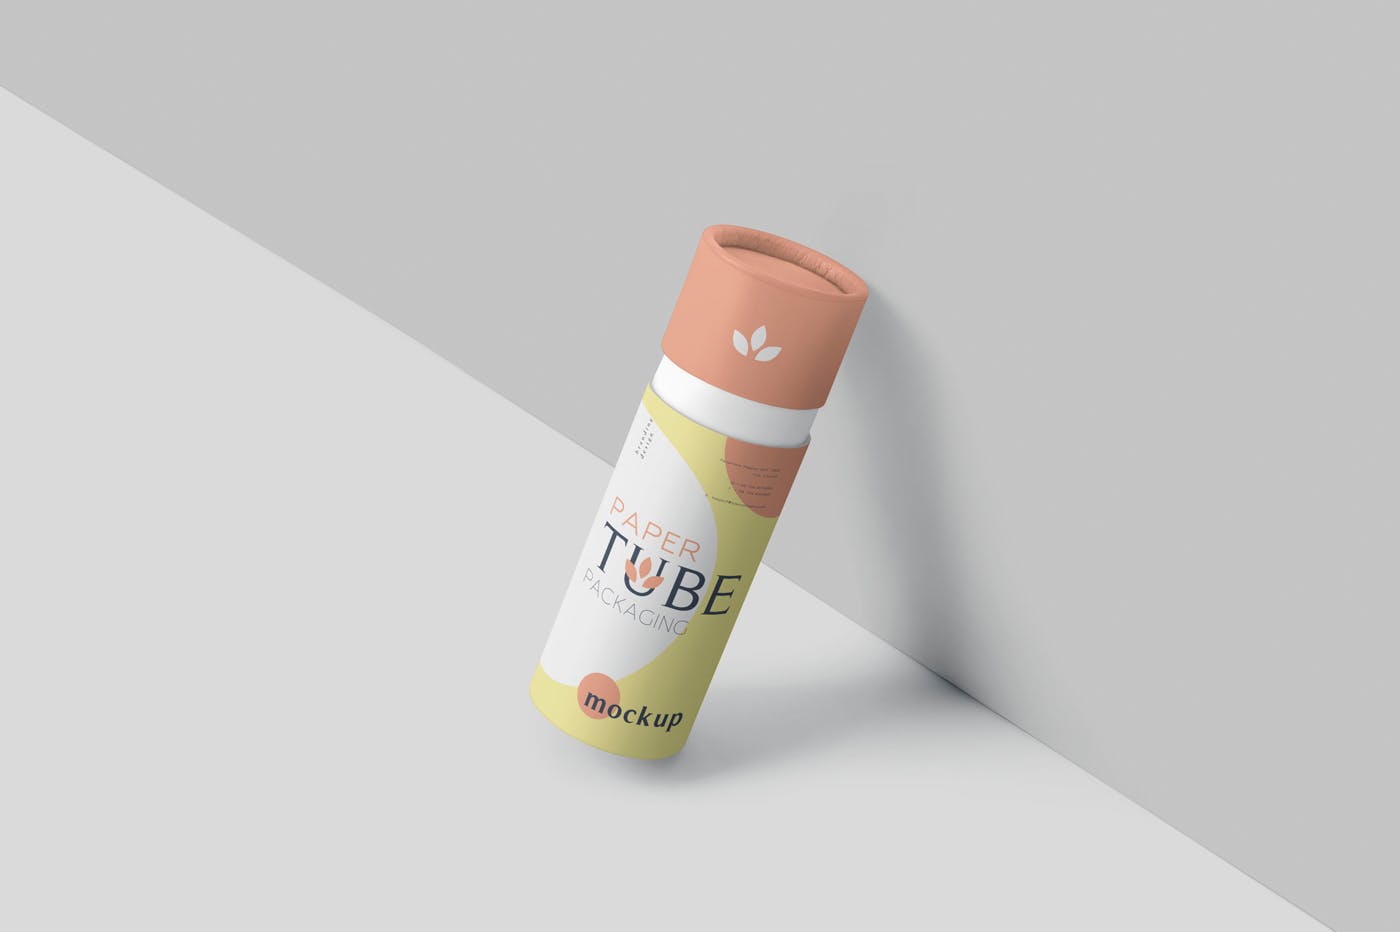 纸管包装外观设计效果图第一素材精选模板 Paper Tube Packaging Mockup Set – Slim插图(3)